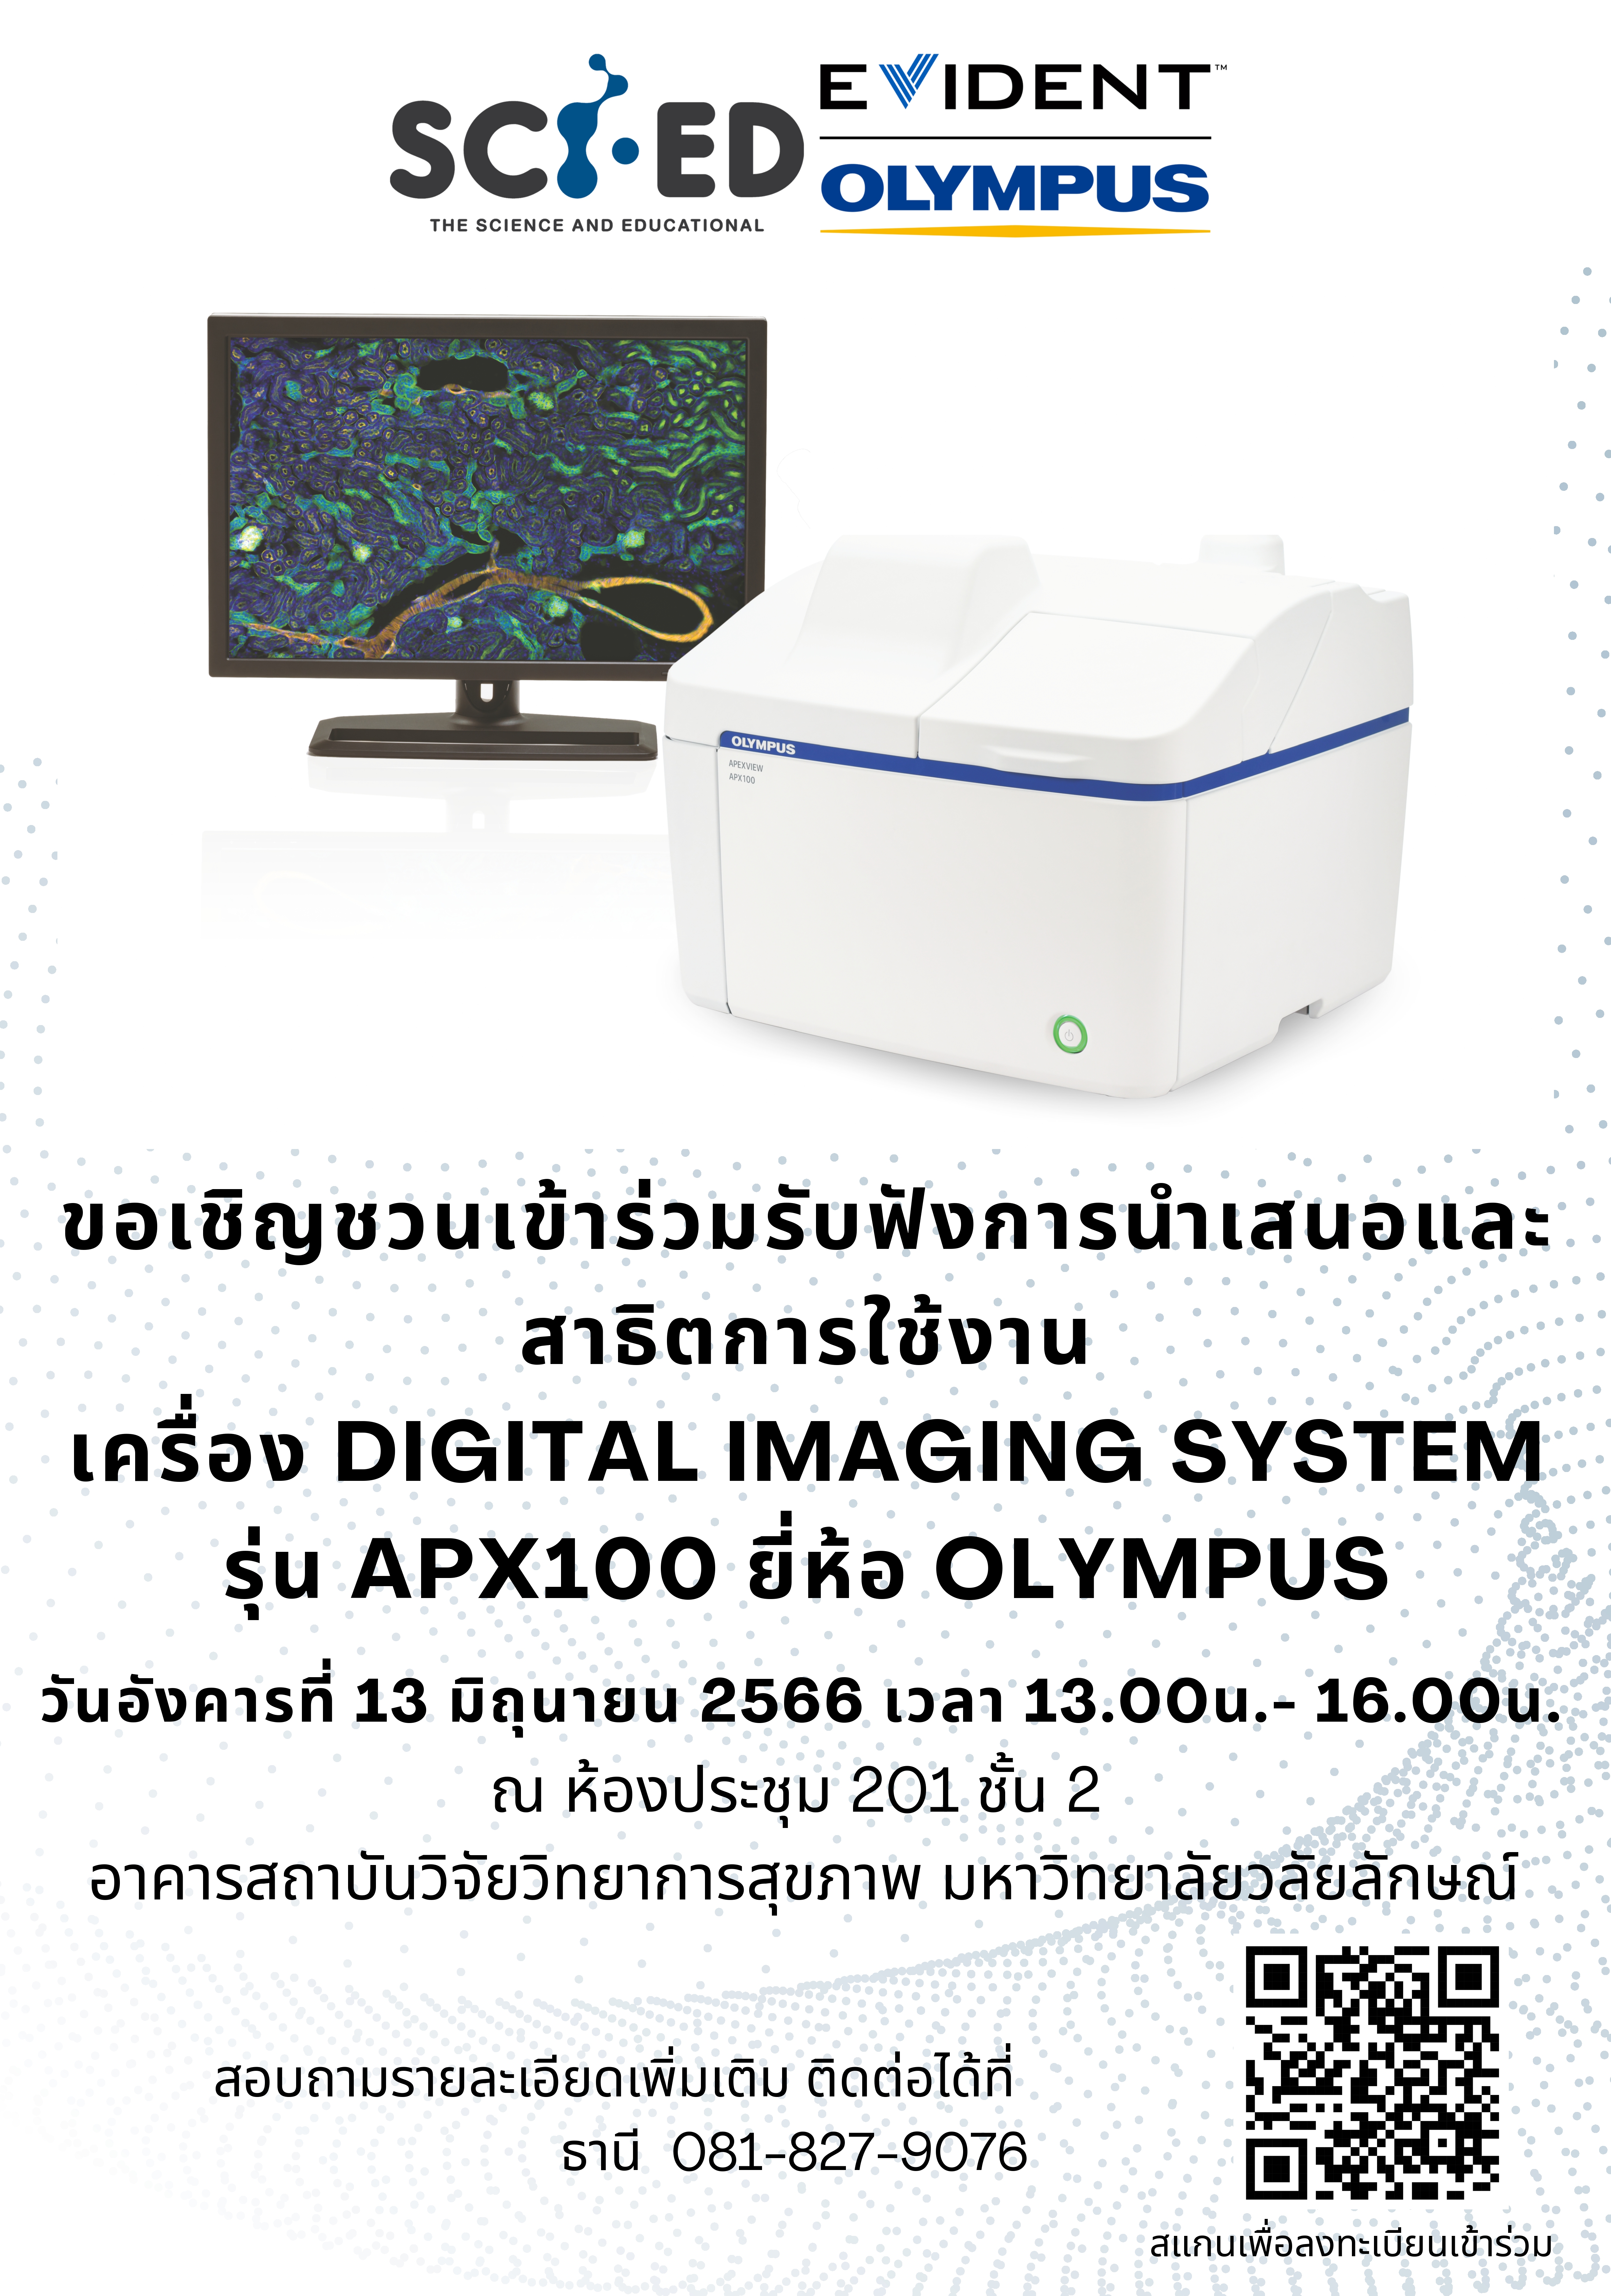 การนำเสนอและสาธิตการใช้งาน เครื่อง DIGITAL IMAGING SYSTEM รุ่น APX100 ยี่ห้อ OLYMPUS